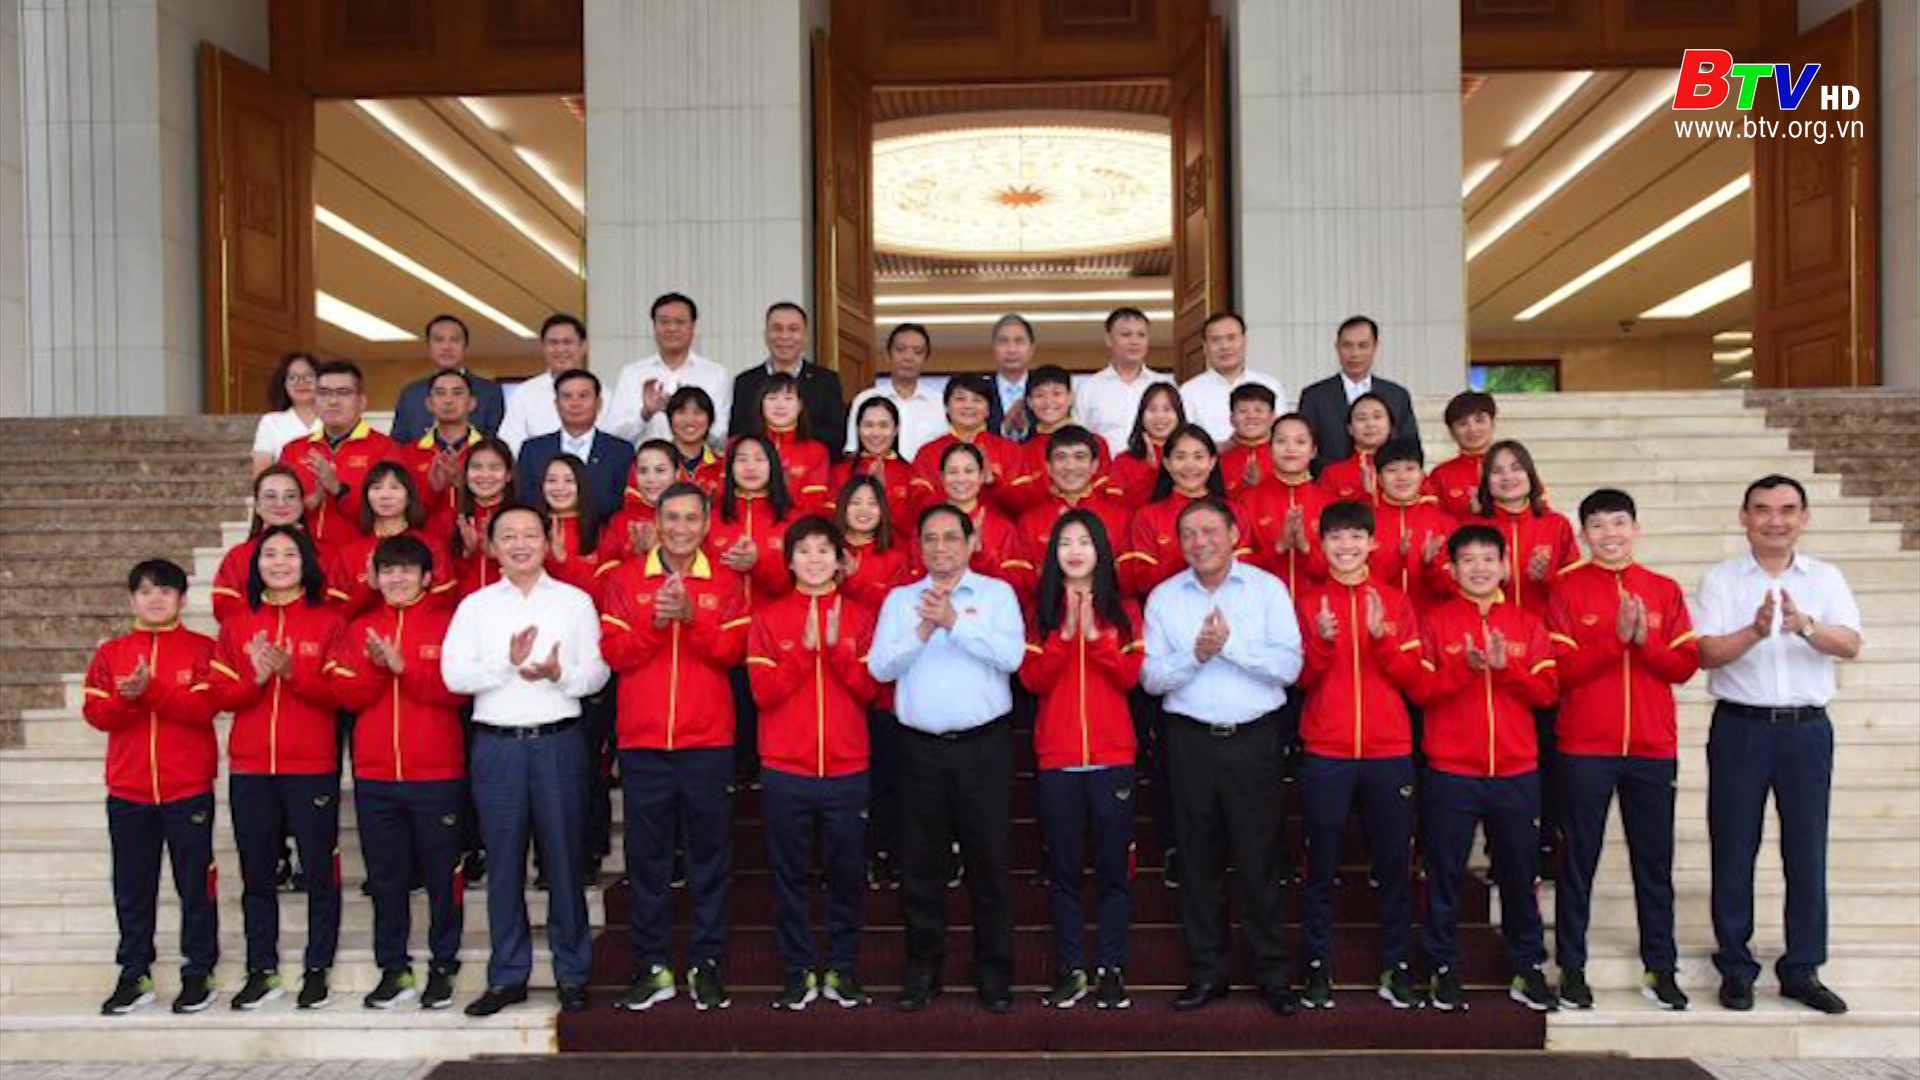 Thủ tướng Phạm Minh Chính gặp mặt và biểu dương đội tuyển bóng đá nữ Việt Nam